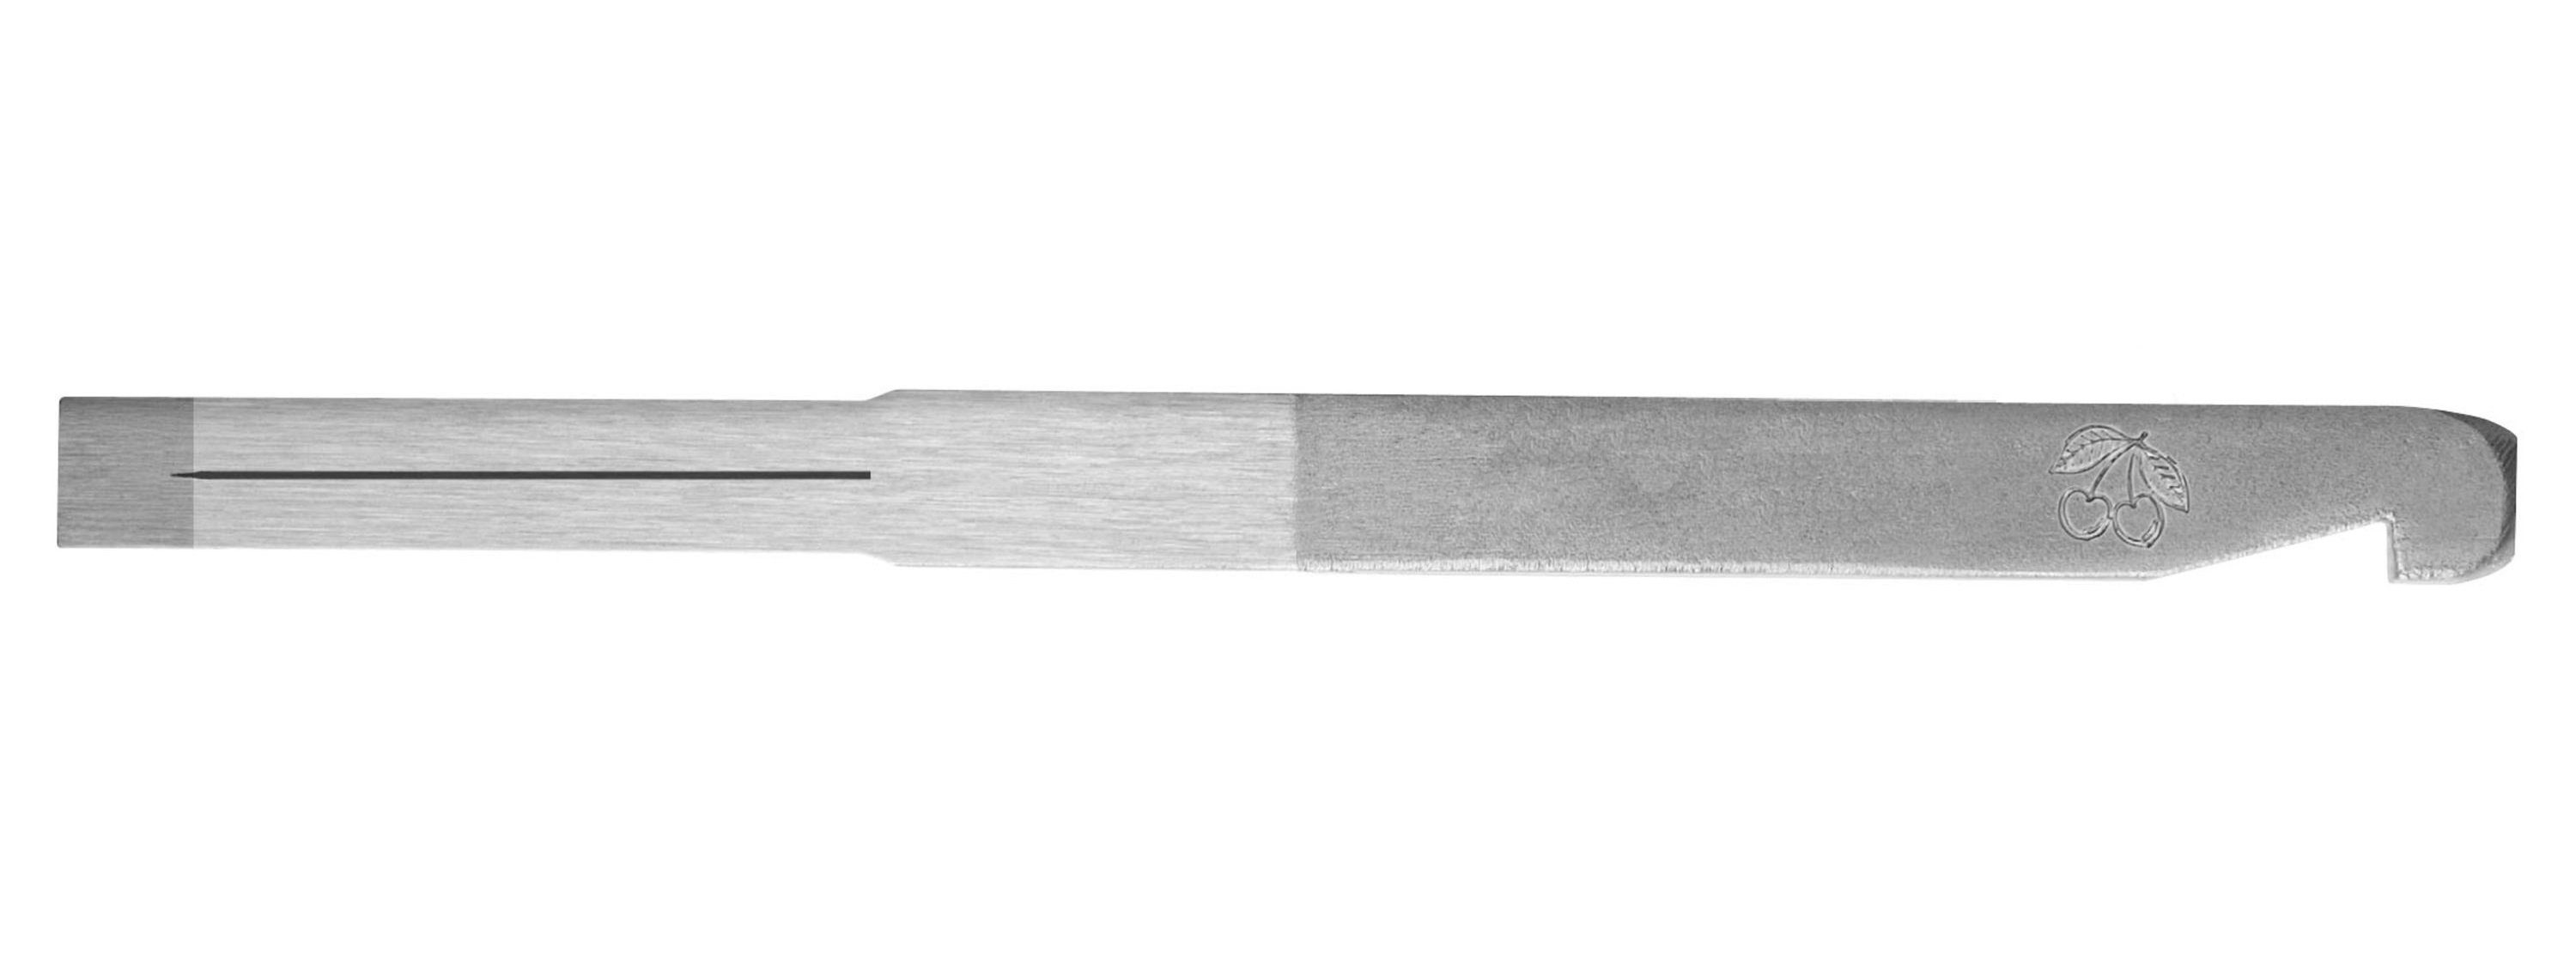 Kirschen Hobelmesser KIRSCHEN Nuthobeleisen mit Haken - 3mm